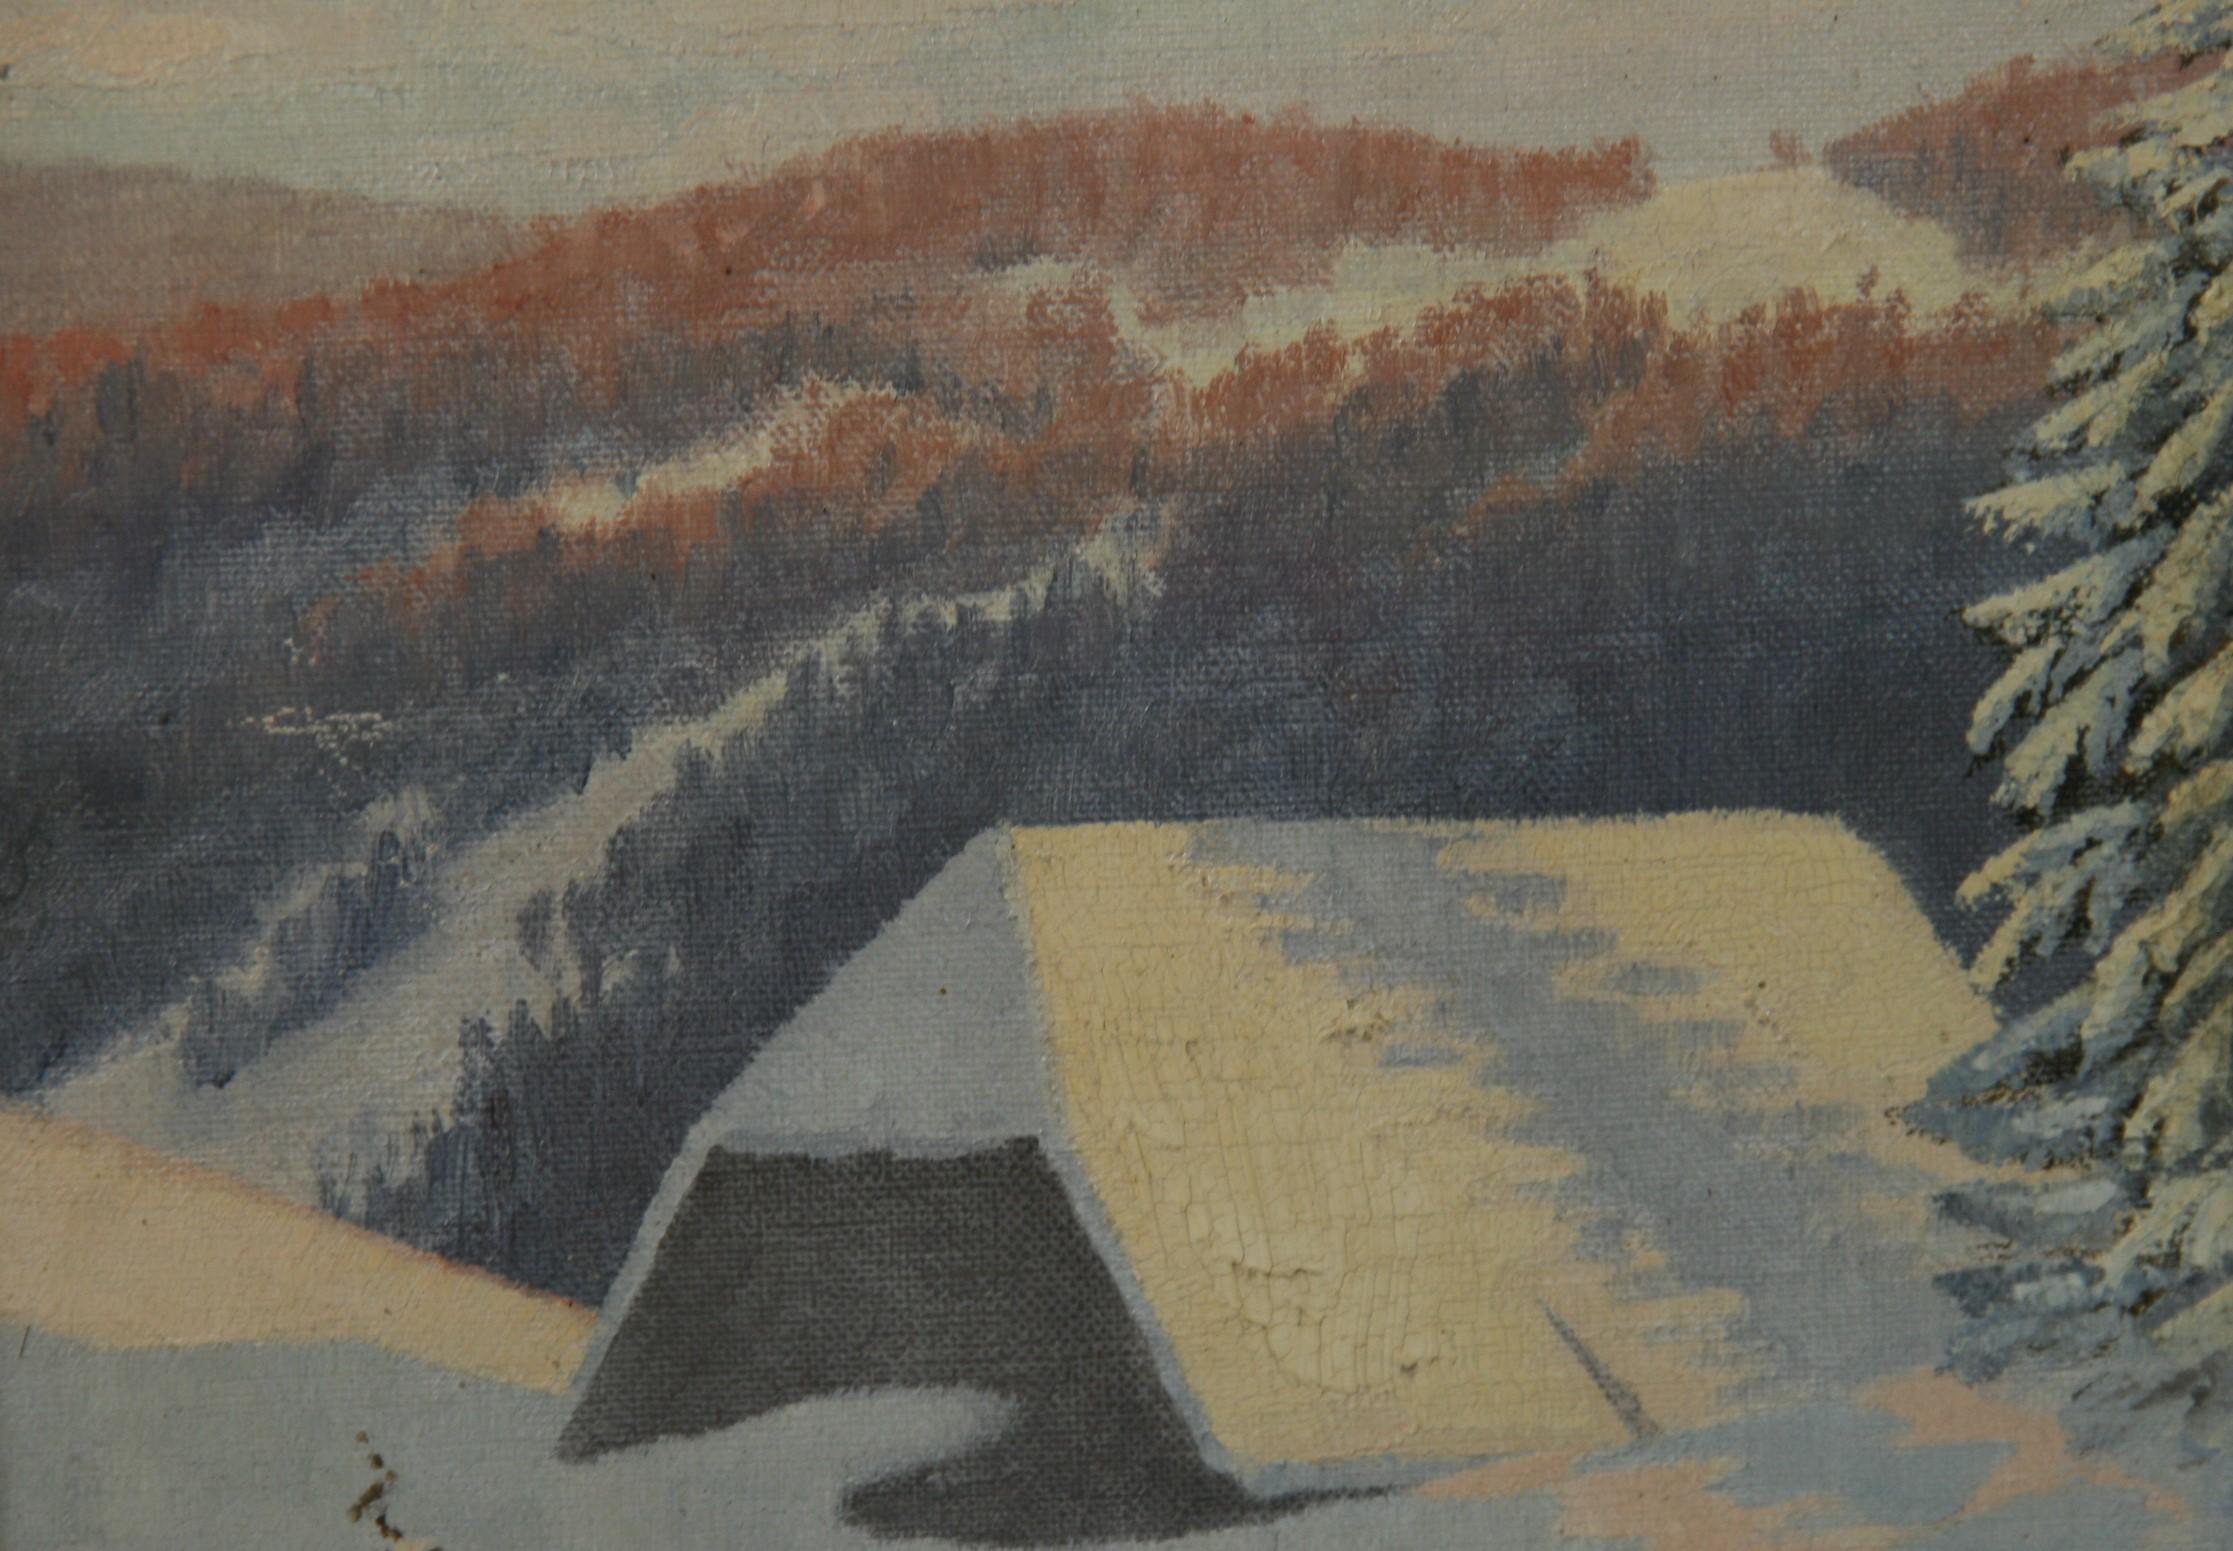 3979 Winter snow scene landscape set in a vintage gilt wood frame
Image size 15.5x10.5